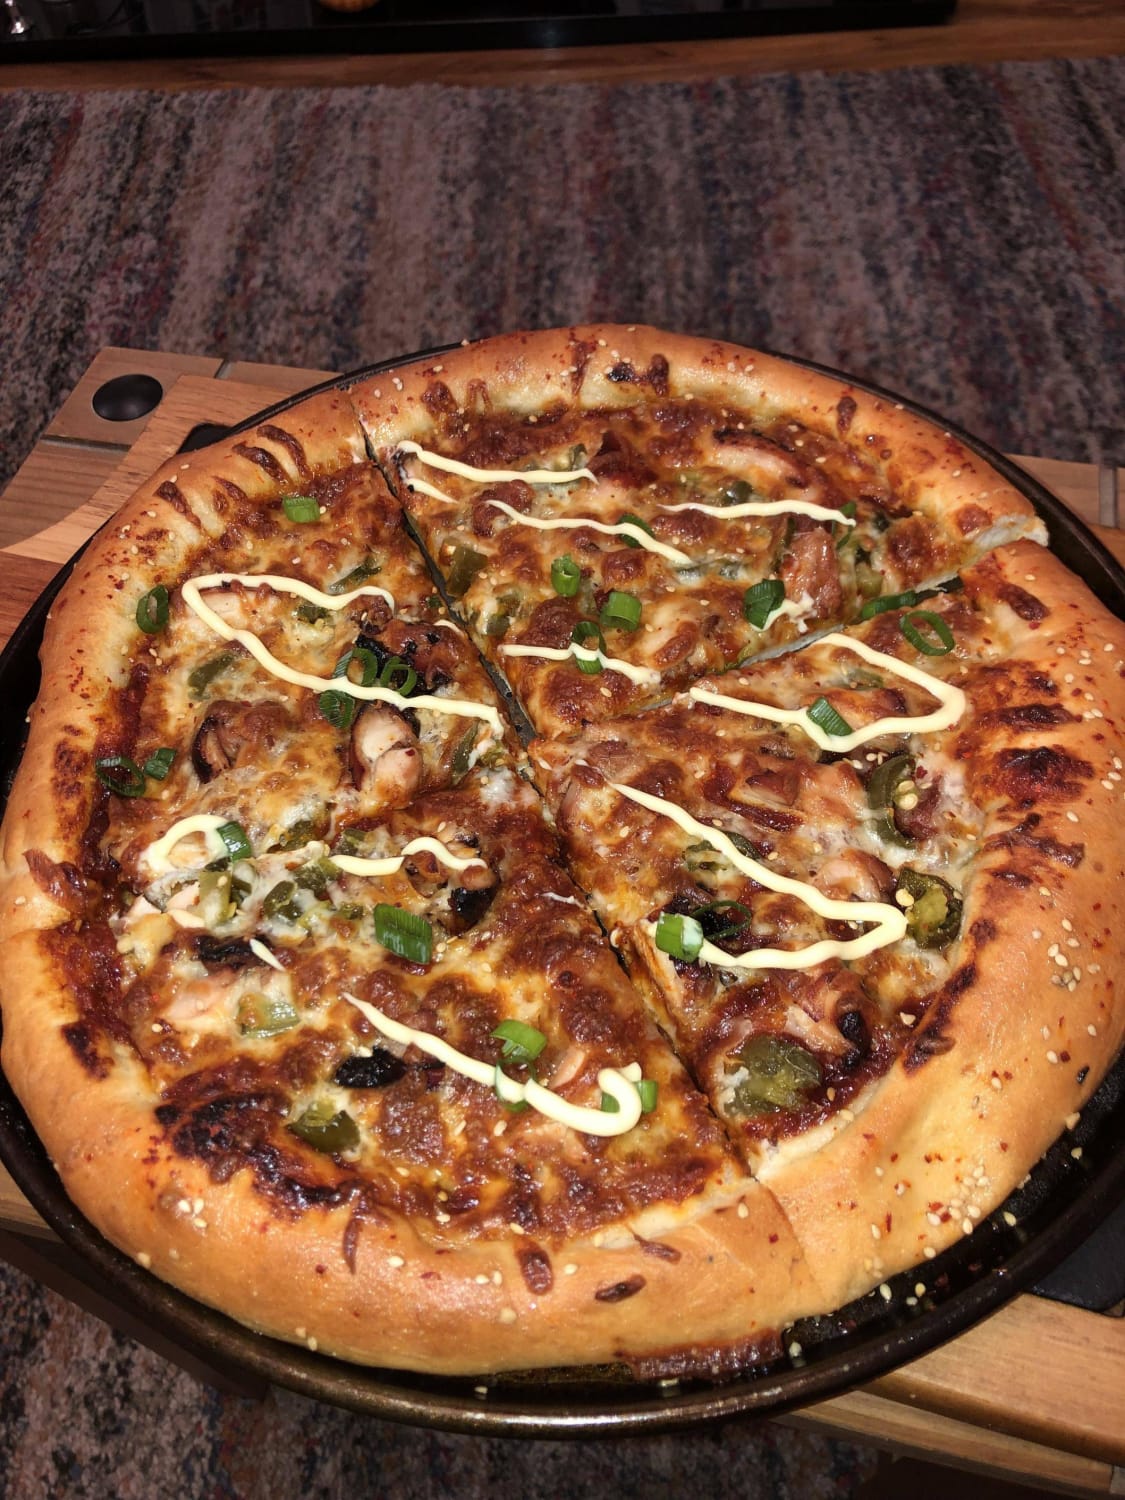 [Homemade] Korean style pizza with gochujang sauce base and chicken bulgogi